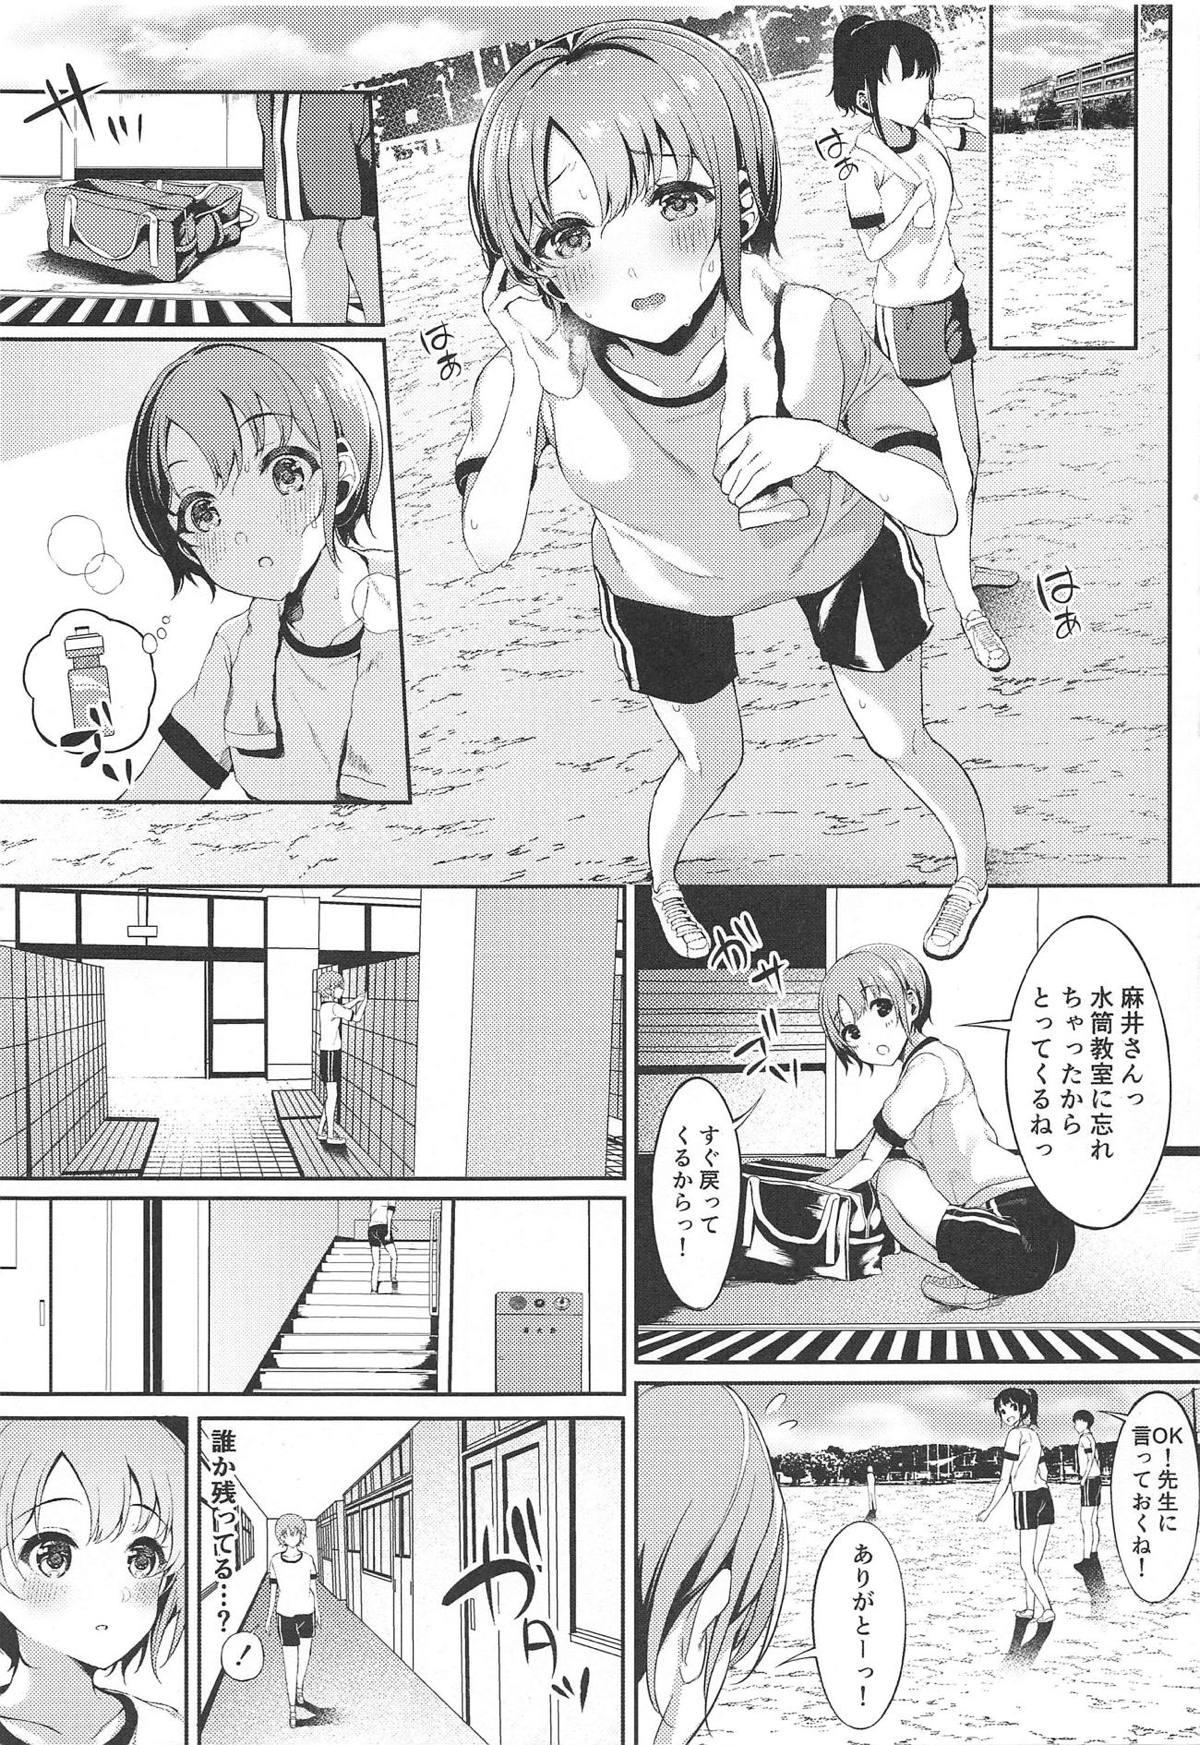 Vadia Akaneiro no Sora ga Yoru ni Somaru made - The idolmaster Cei - Page 6